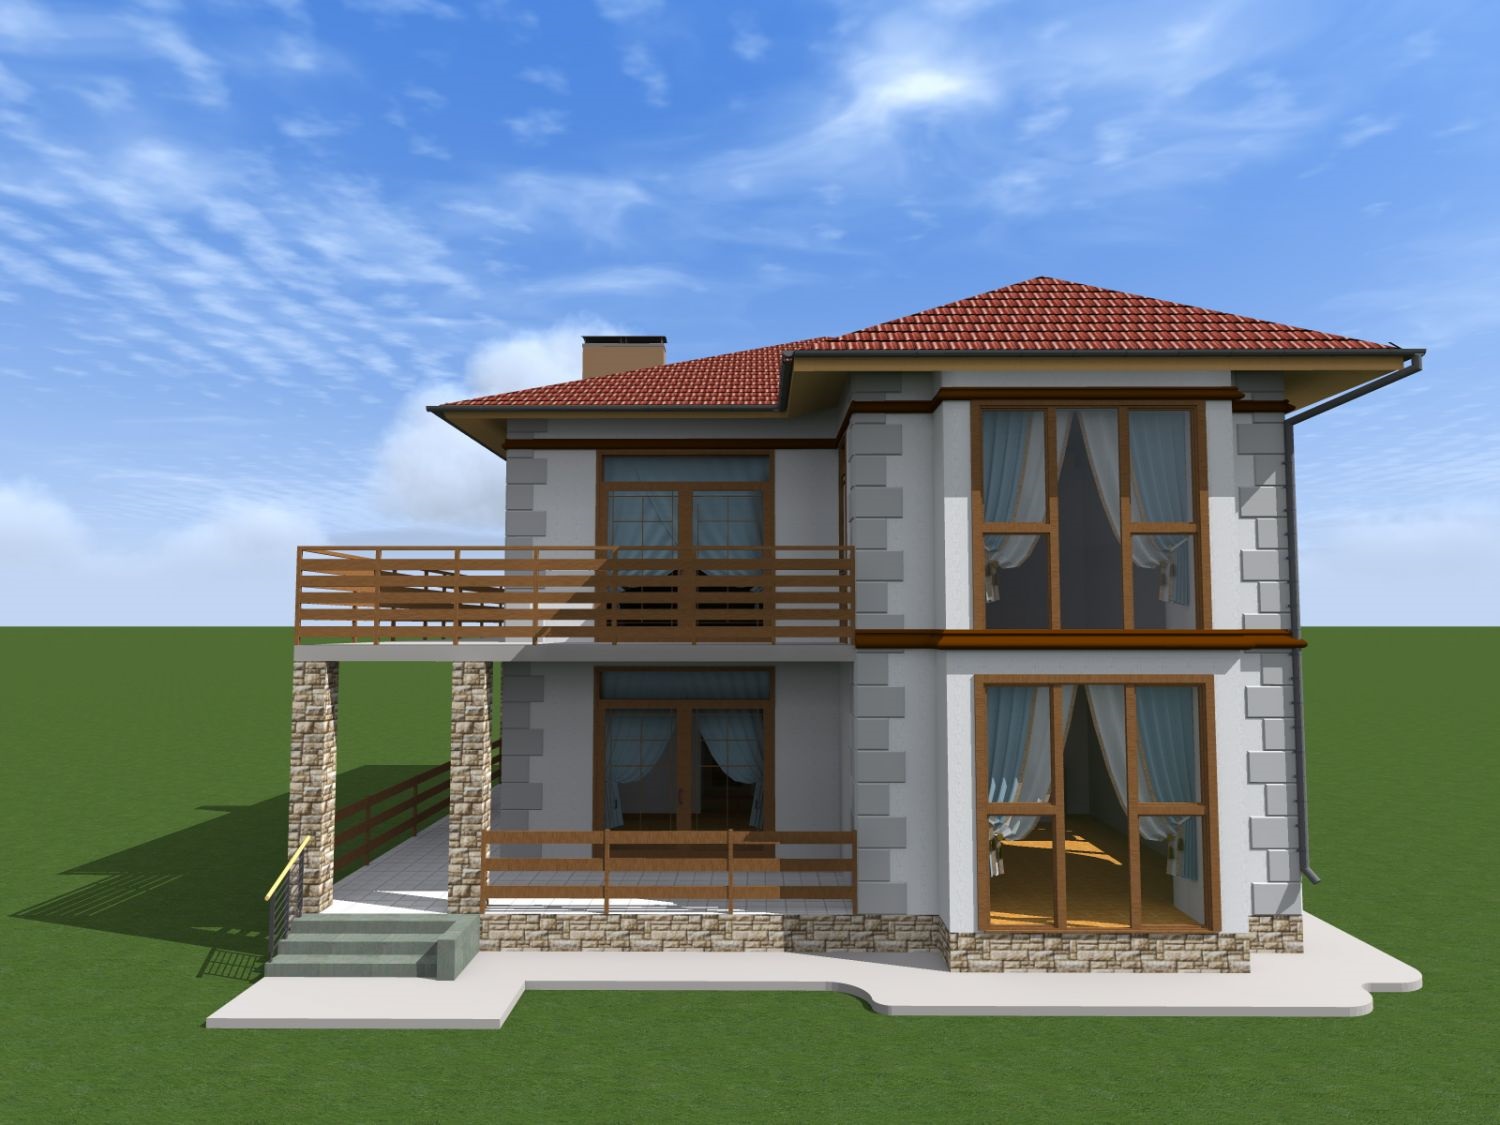 Индивидуальный двухэтажный жилой дом для одной семьи в формате ArchiCAD (.pln)